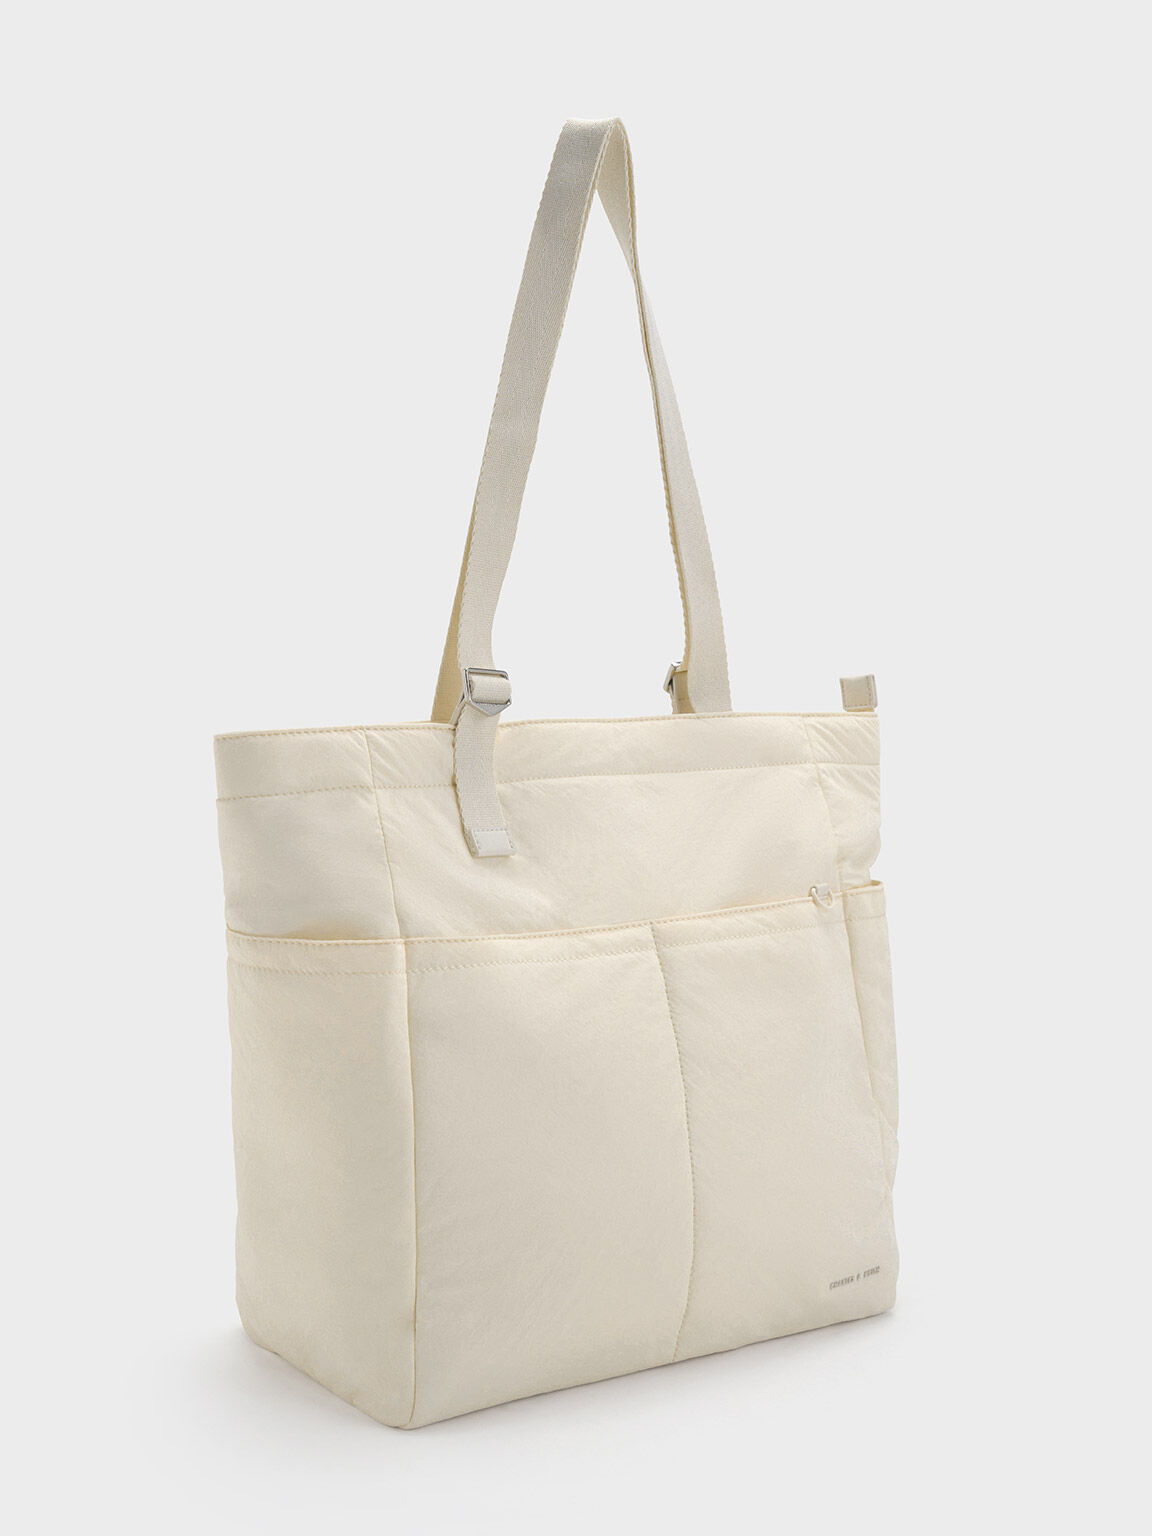 Women's L reversible nylon tote bag I Desigual.com